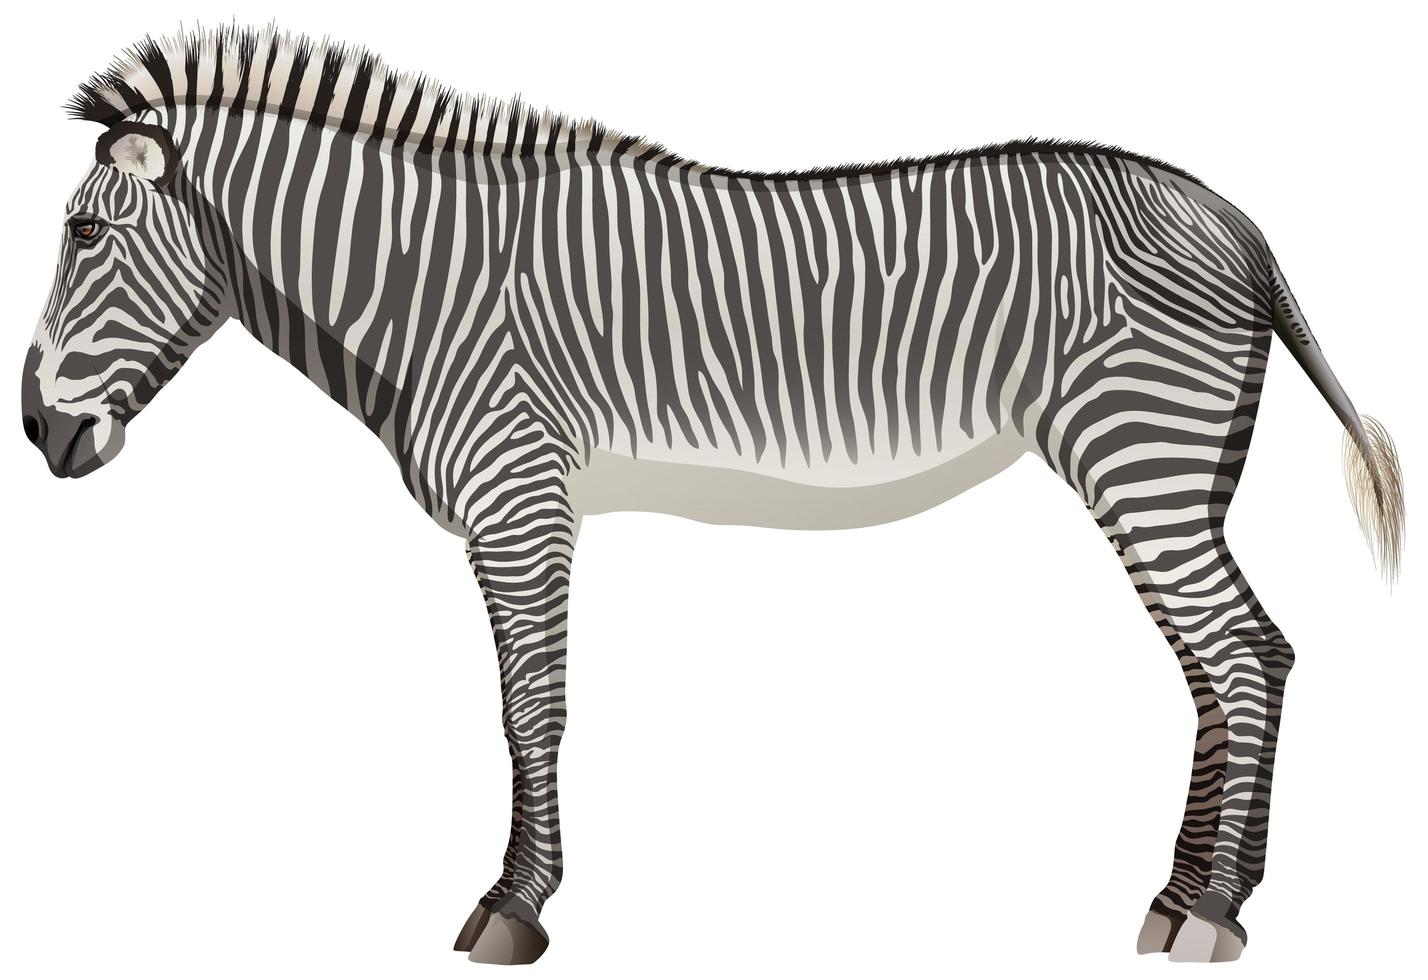 zebra adulta in posizione eretta su sfondo bianco vettore